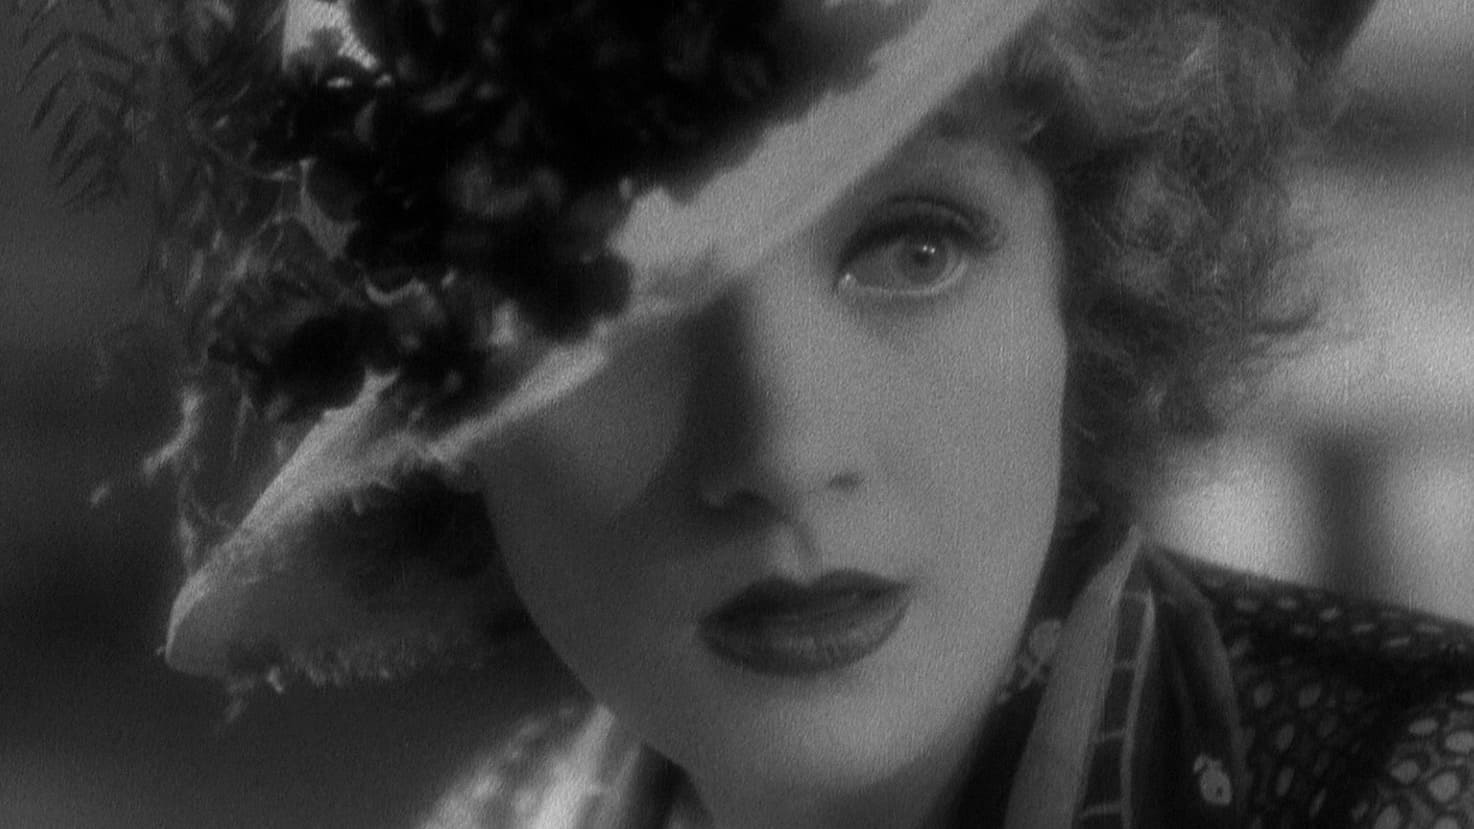 Blonde Venus 1932 123movies